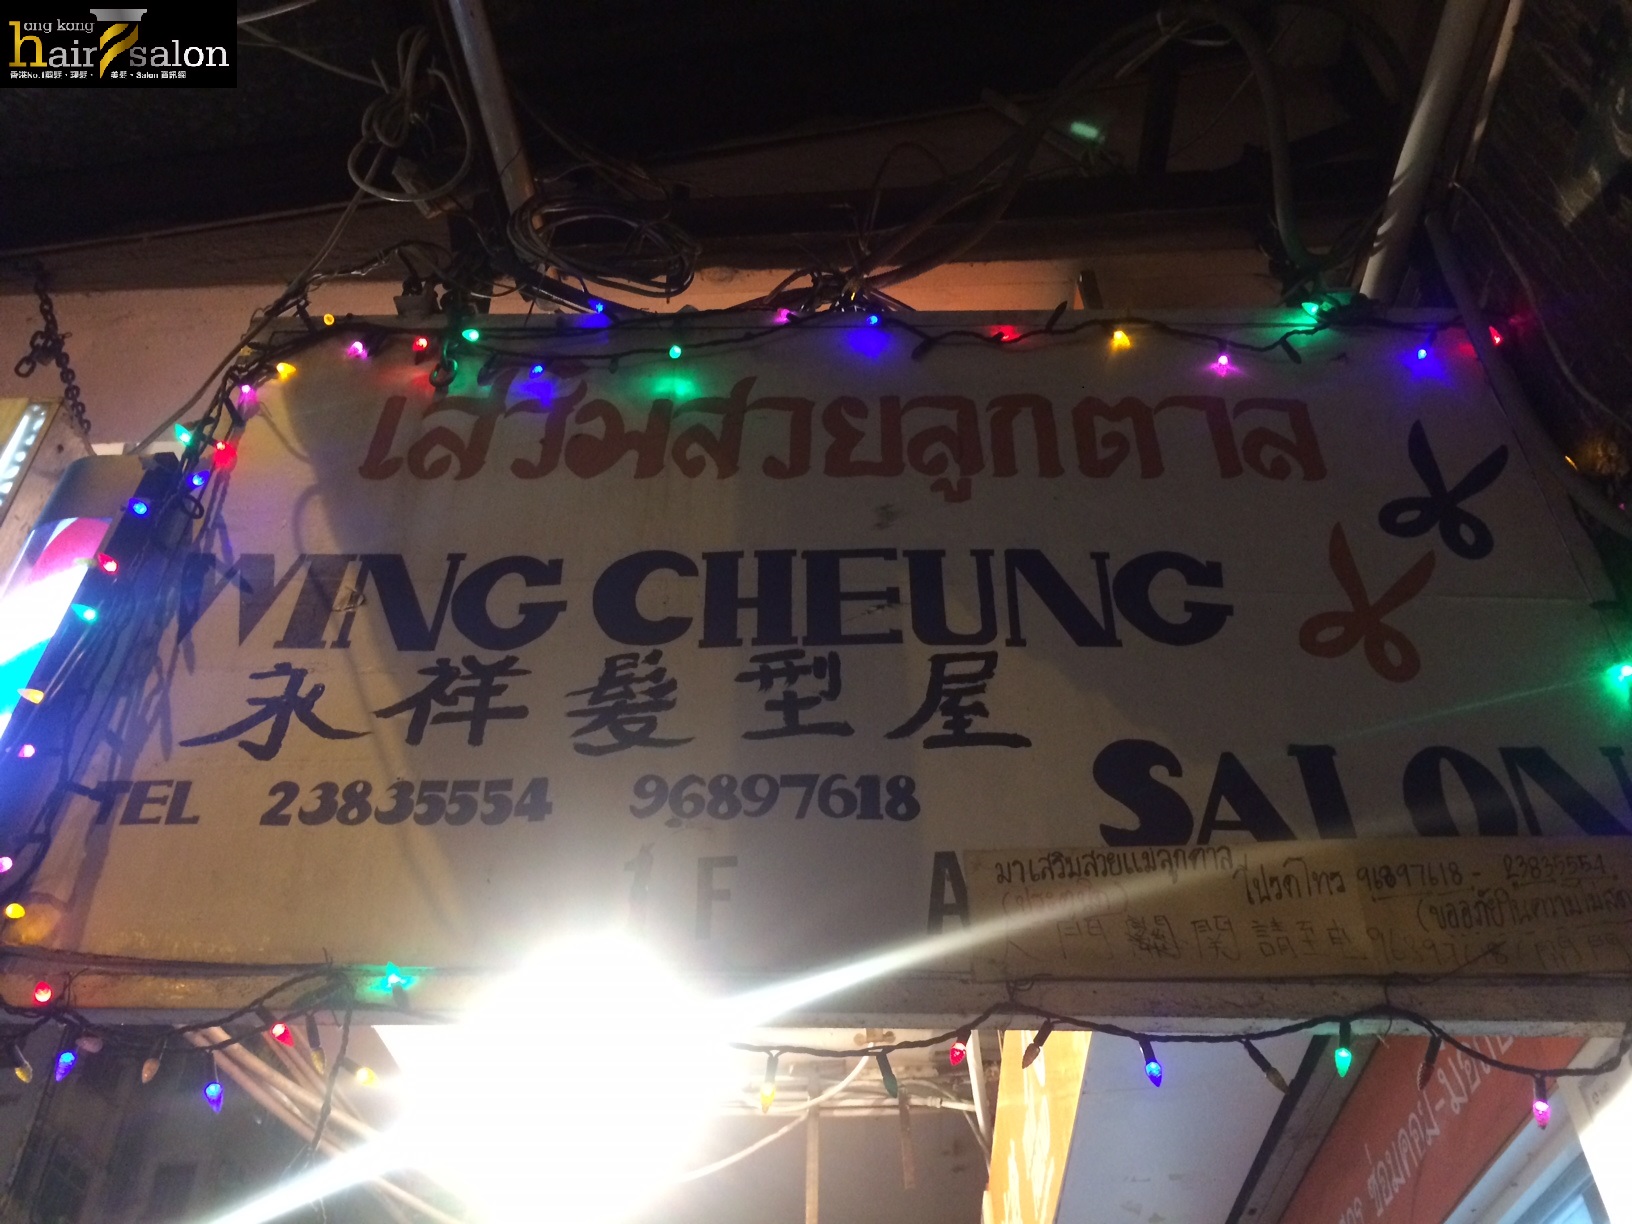 洗剪吹/洗吹造型: Wing Cheung Salon 永祥髮型屋 